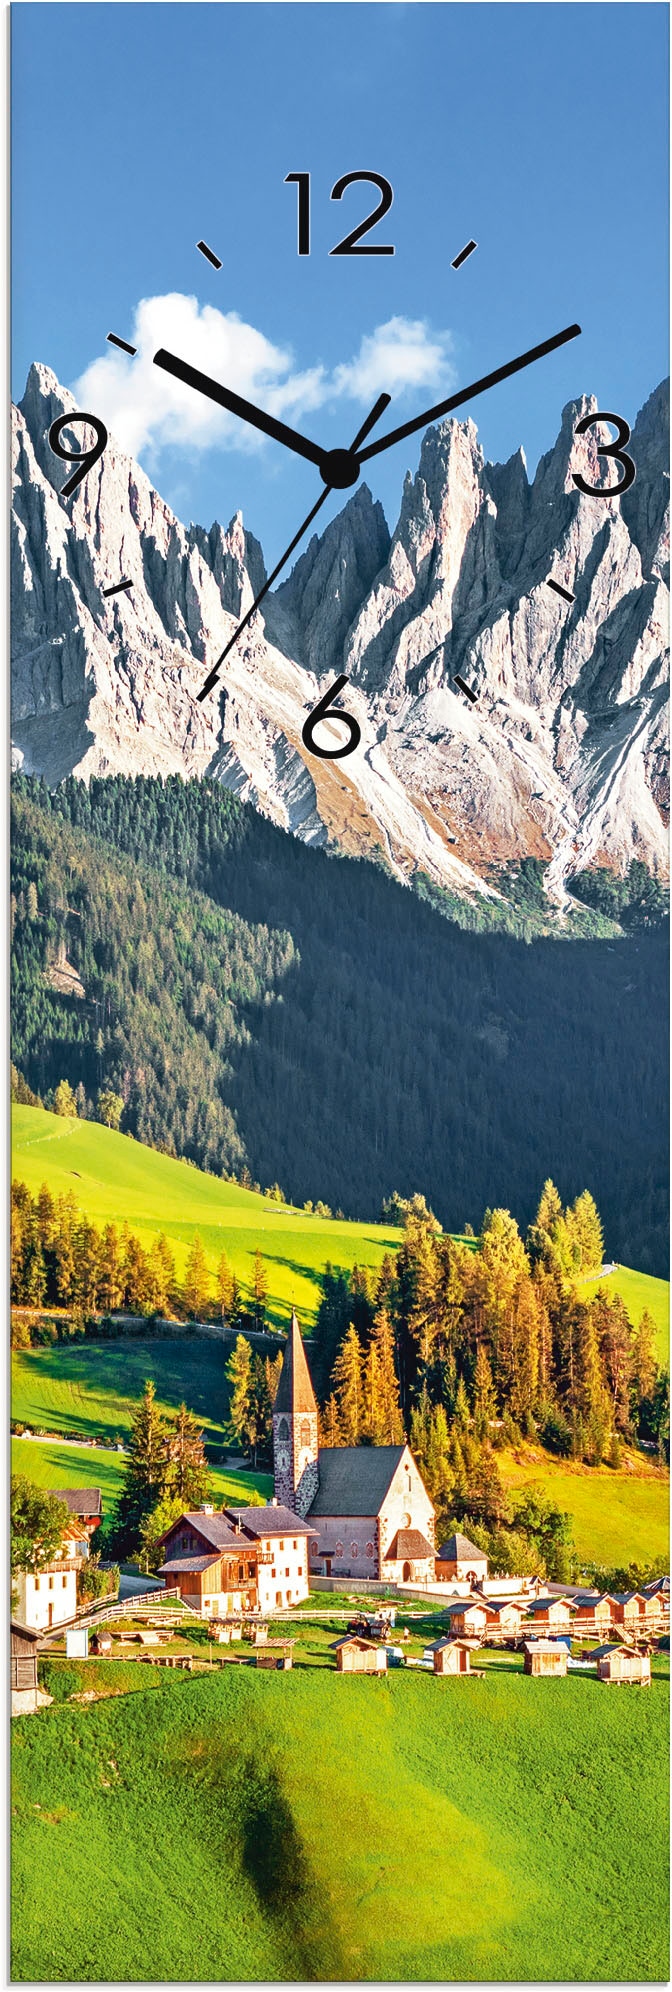 Artland Wanduhr "Glasuhr Alpen Berge Santa Maddalena", wahlweise mit Quarz- oder Funkuhrwerk, lautlos ohne Tickgeräusche